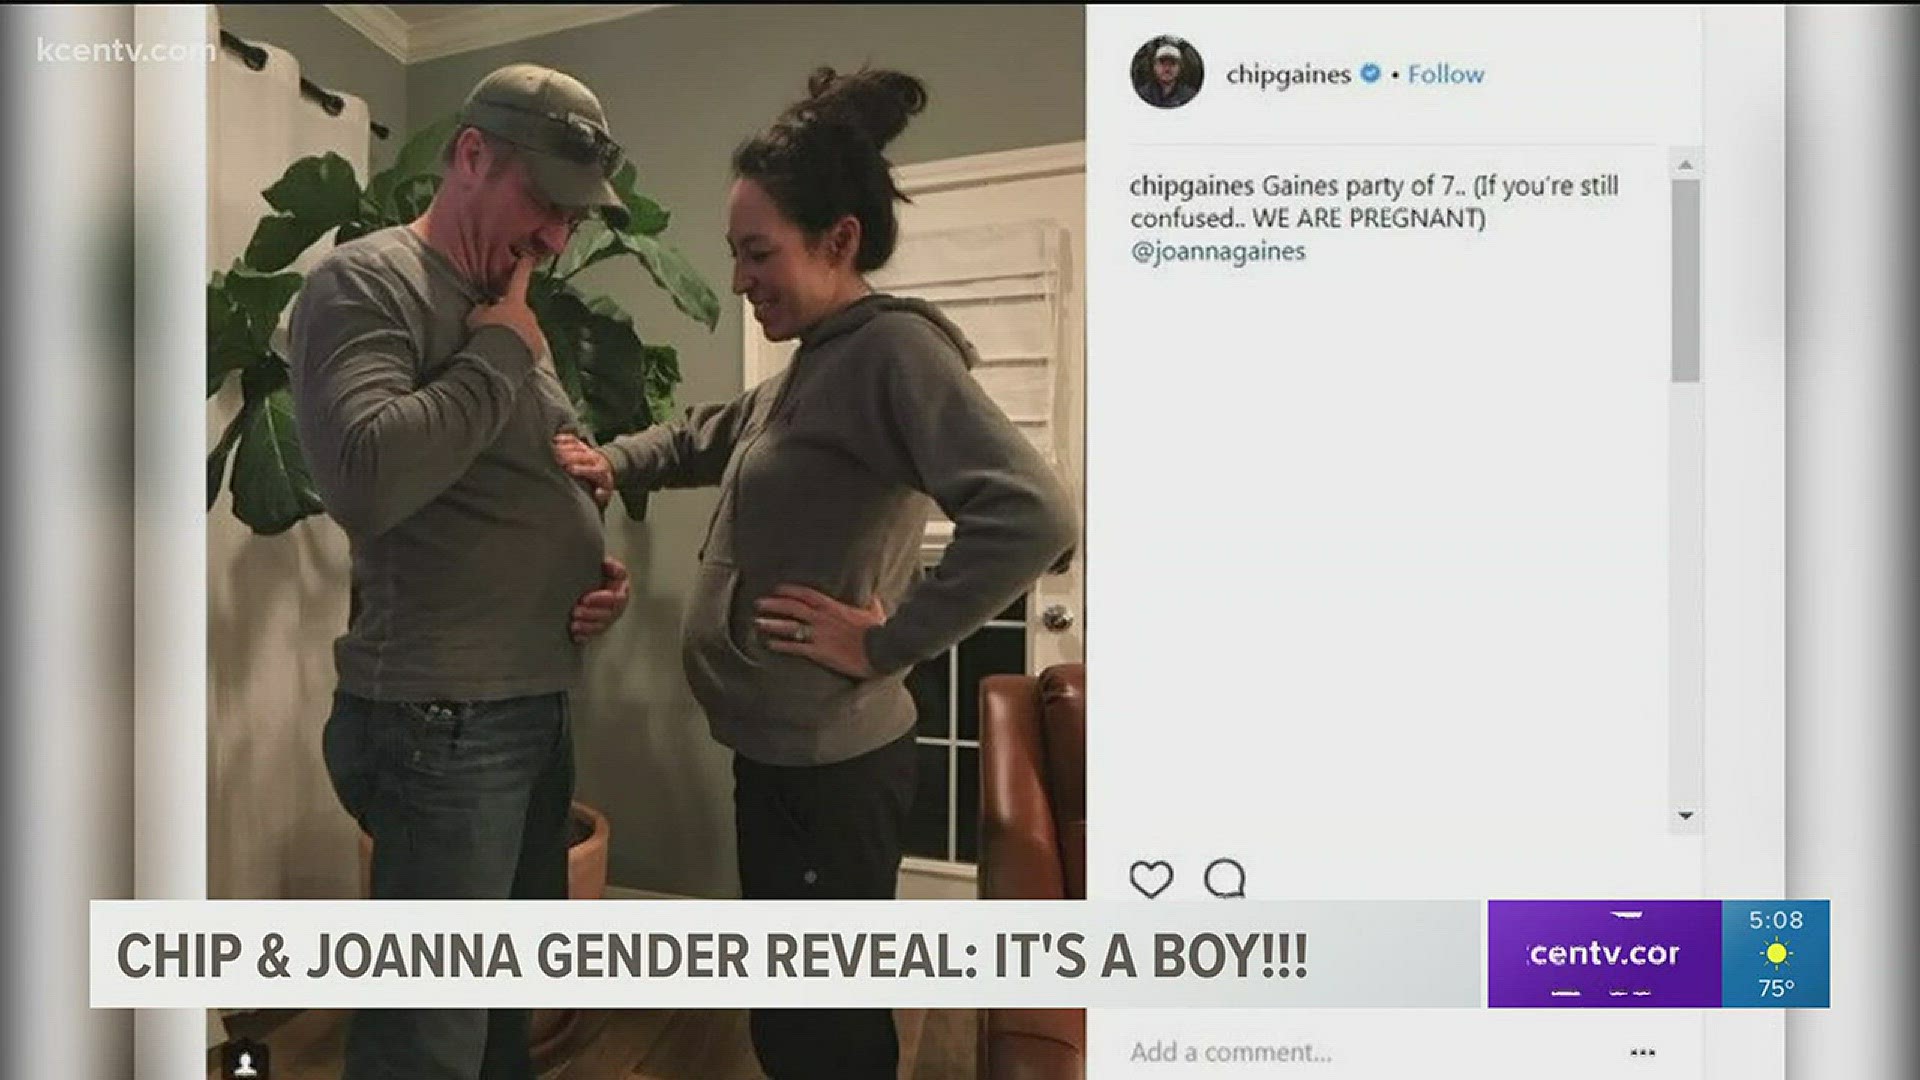 Well -- it's a boy!!